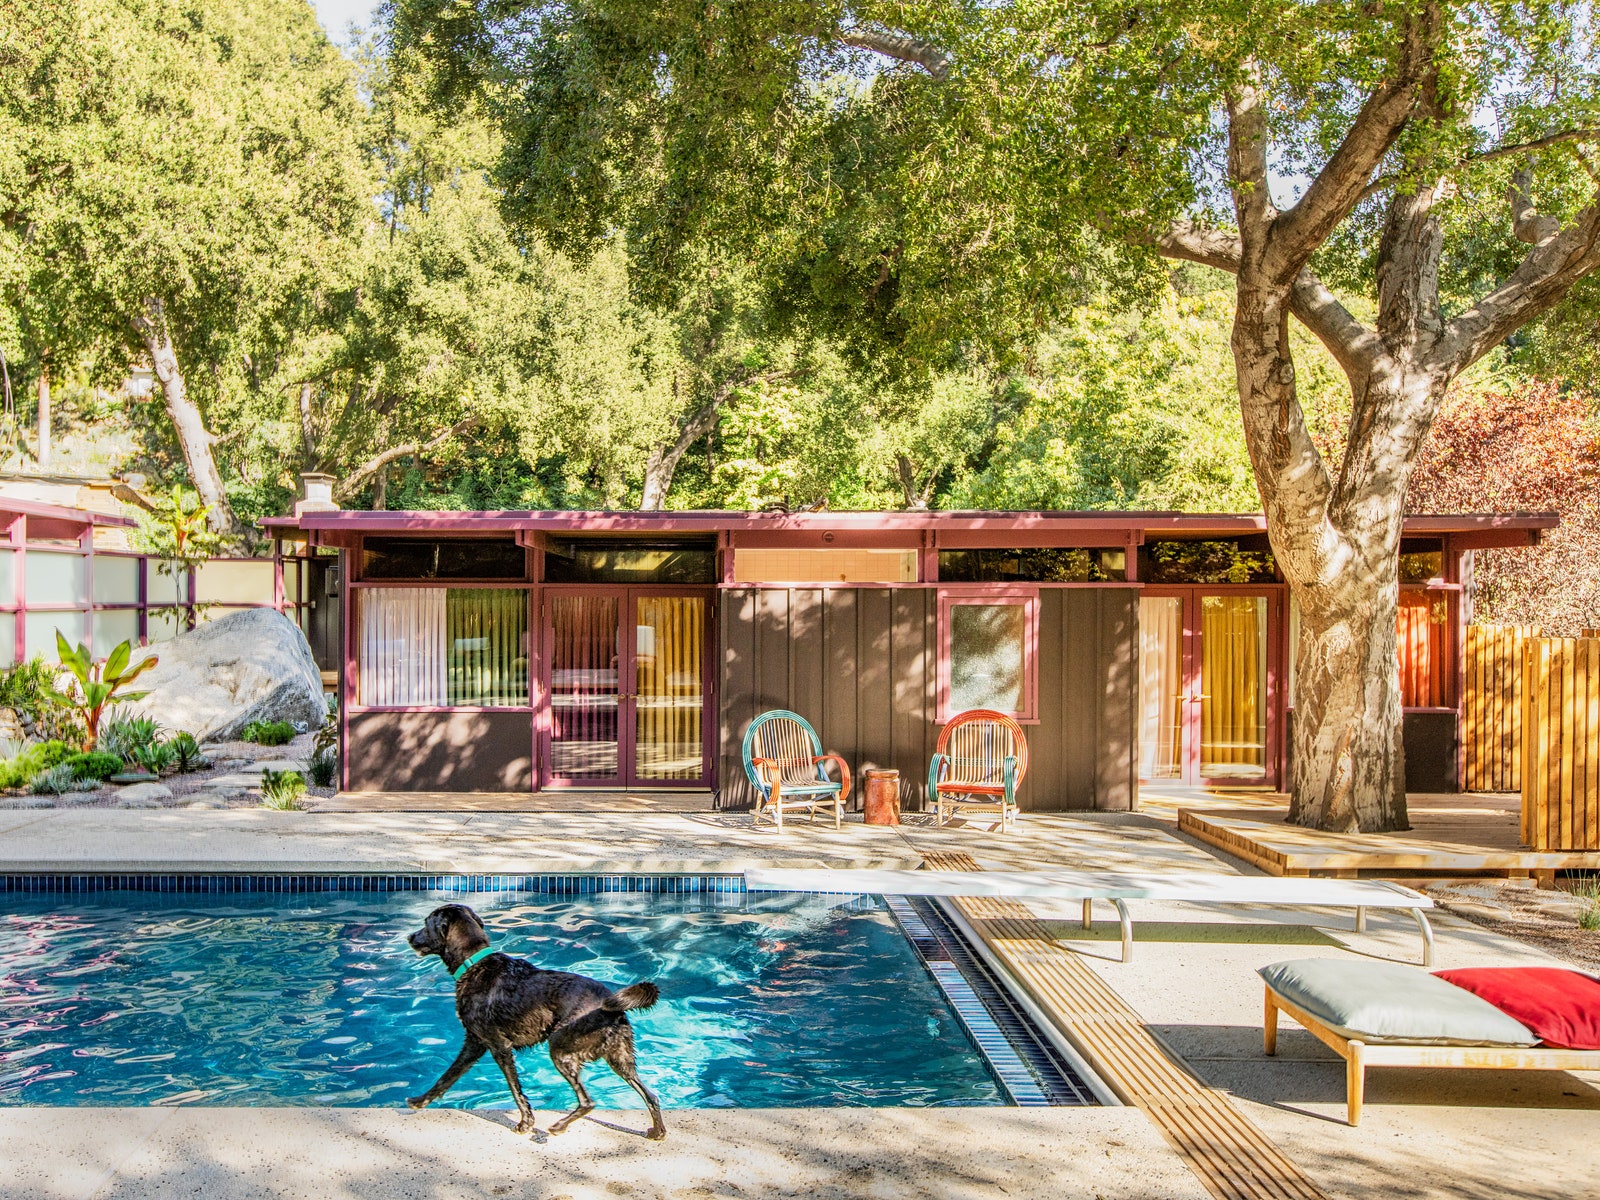 Esta casa foi projetada pelo arquiteto Frances Merrill. As áreas externas possuem uma mistura viva e rica de cores e texturas. A piscina é cercada por poltronas de bambu e carvalho além de um jardim que mistura estilo japonês e plantas da Califórnia.